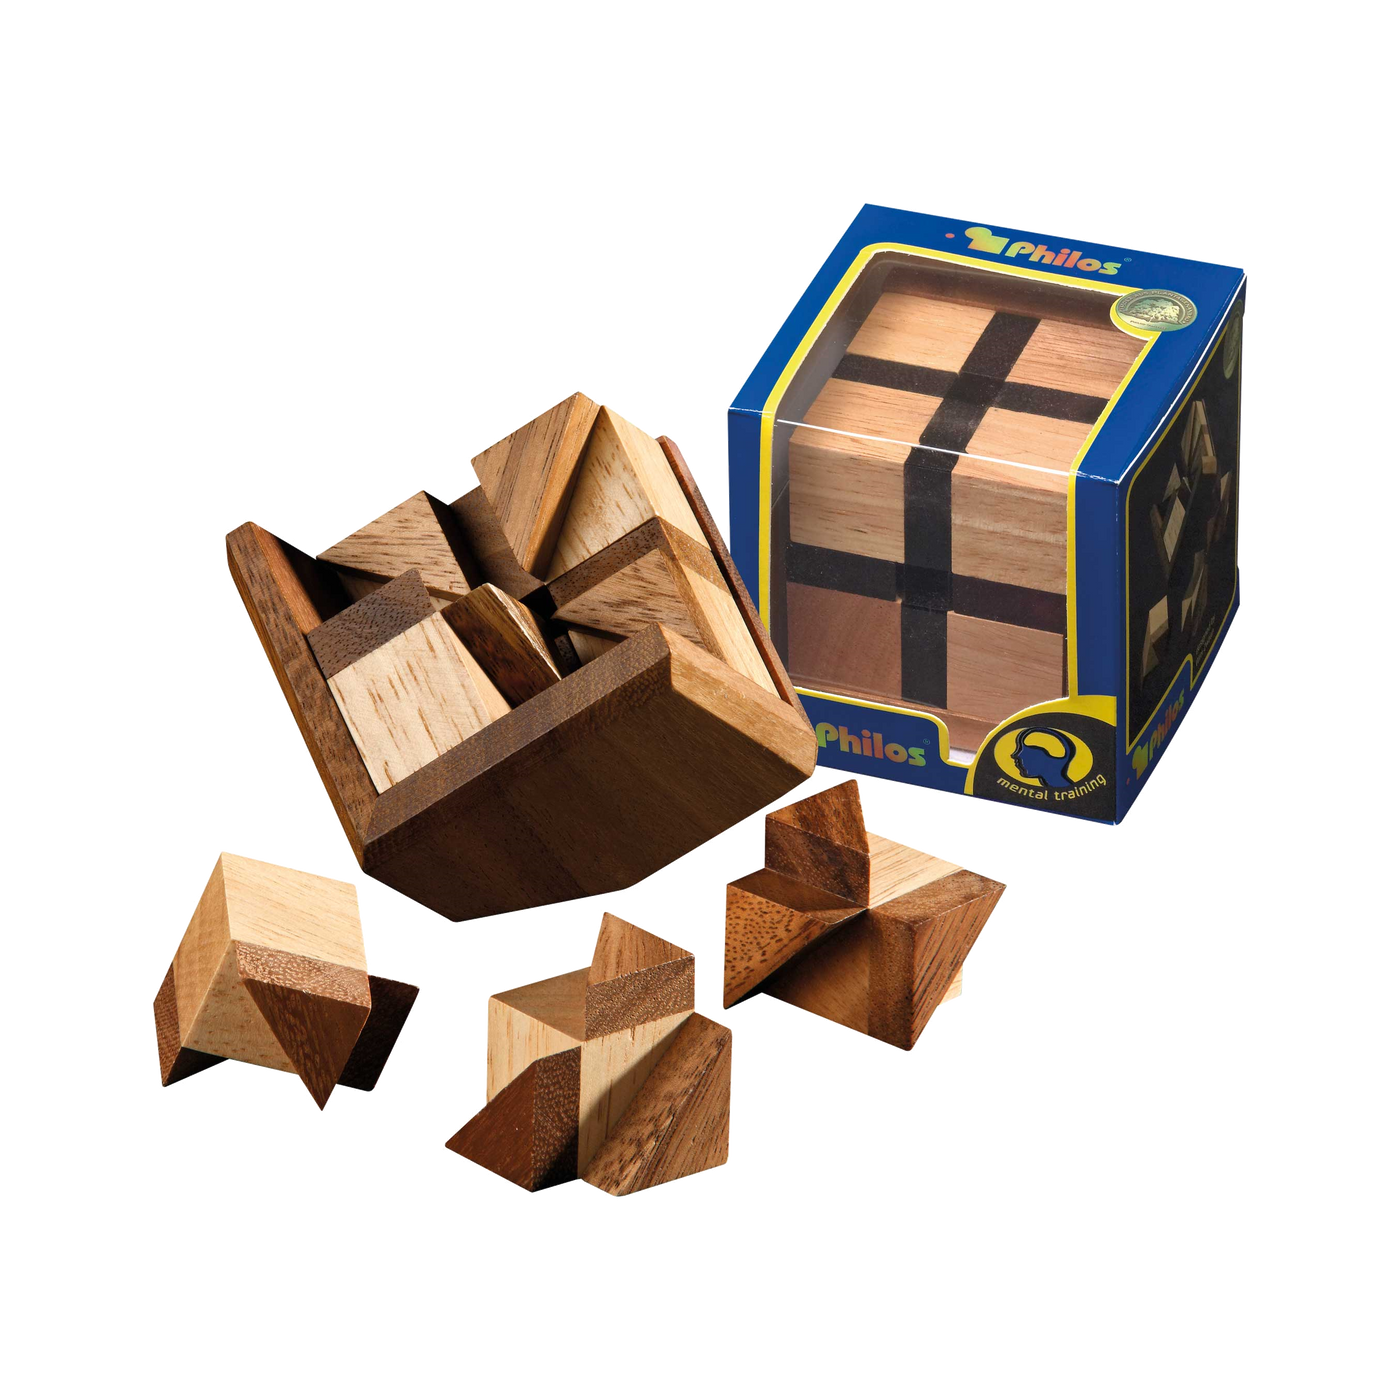 Bermuda Cube Puzzle